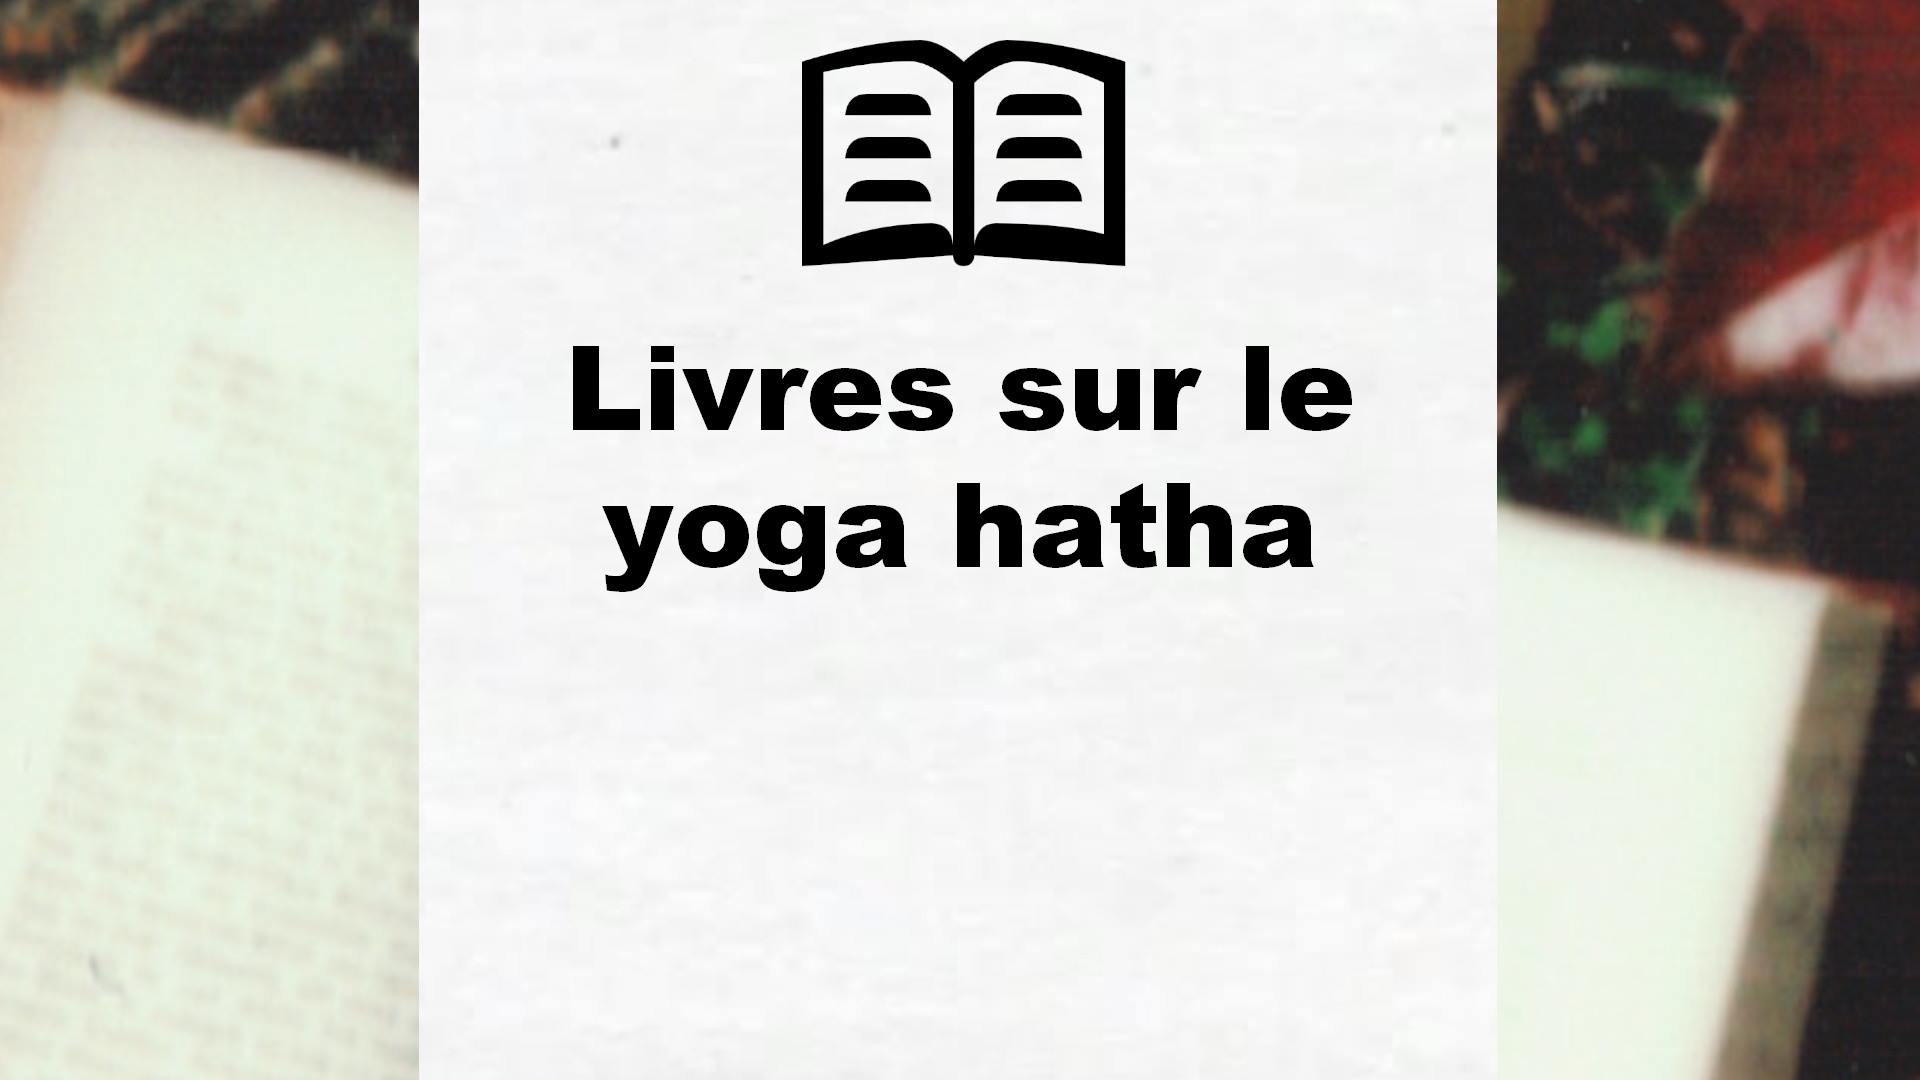 Livres sur le yoga hatha